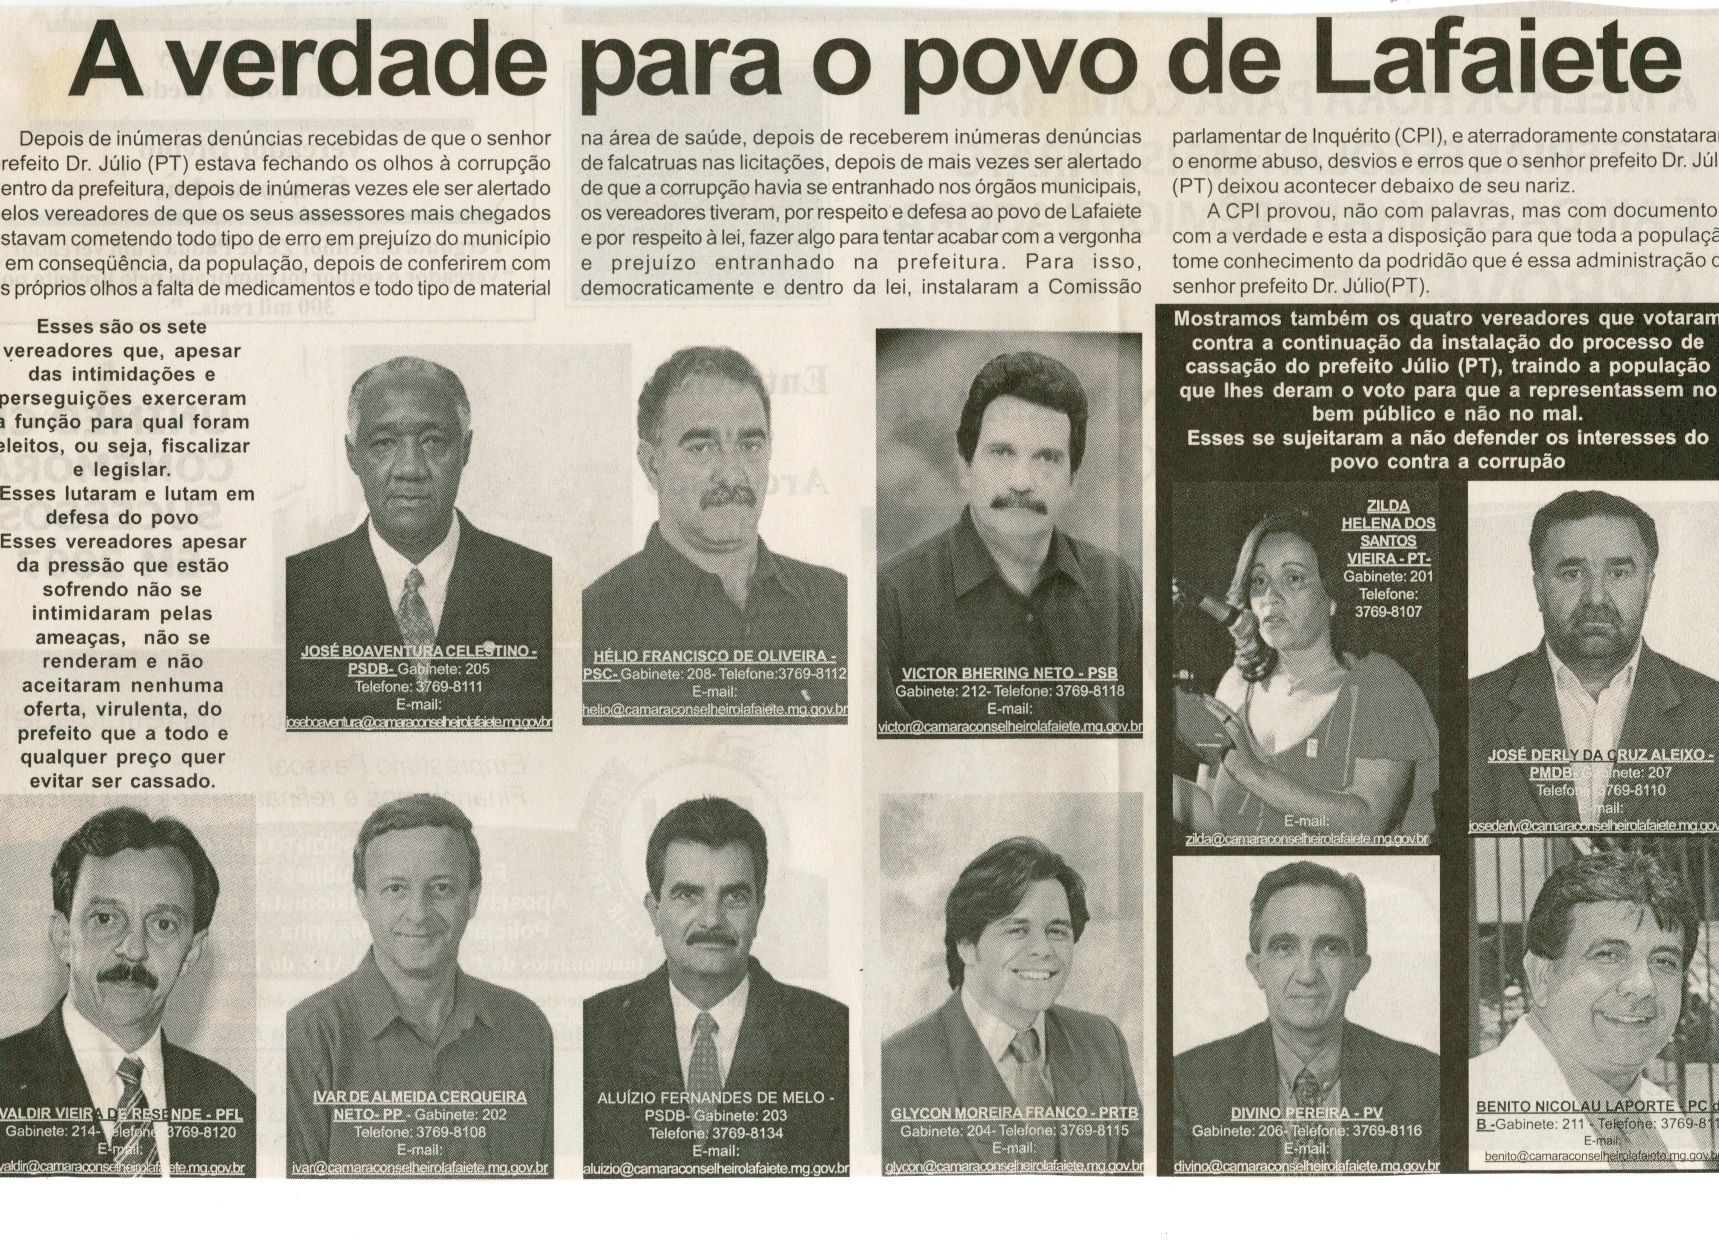 A verdade para o povo de Lafaiete. Jornal Nova Gazeta, onselheiro Lafaiete, 12 jan. 2008, 496ª ed., p. 02